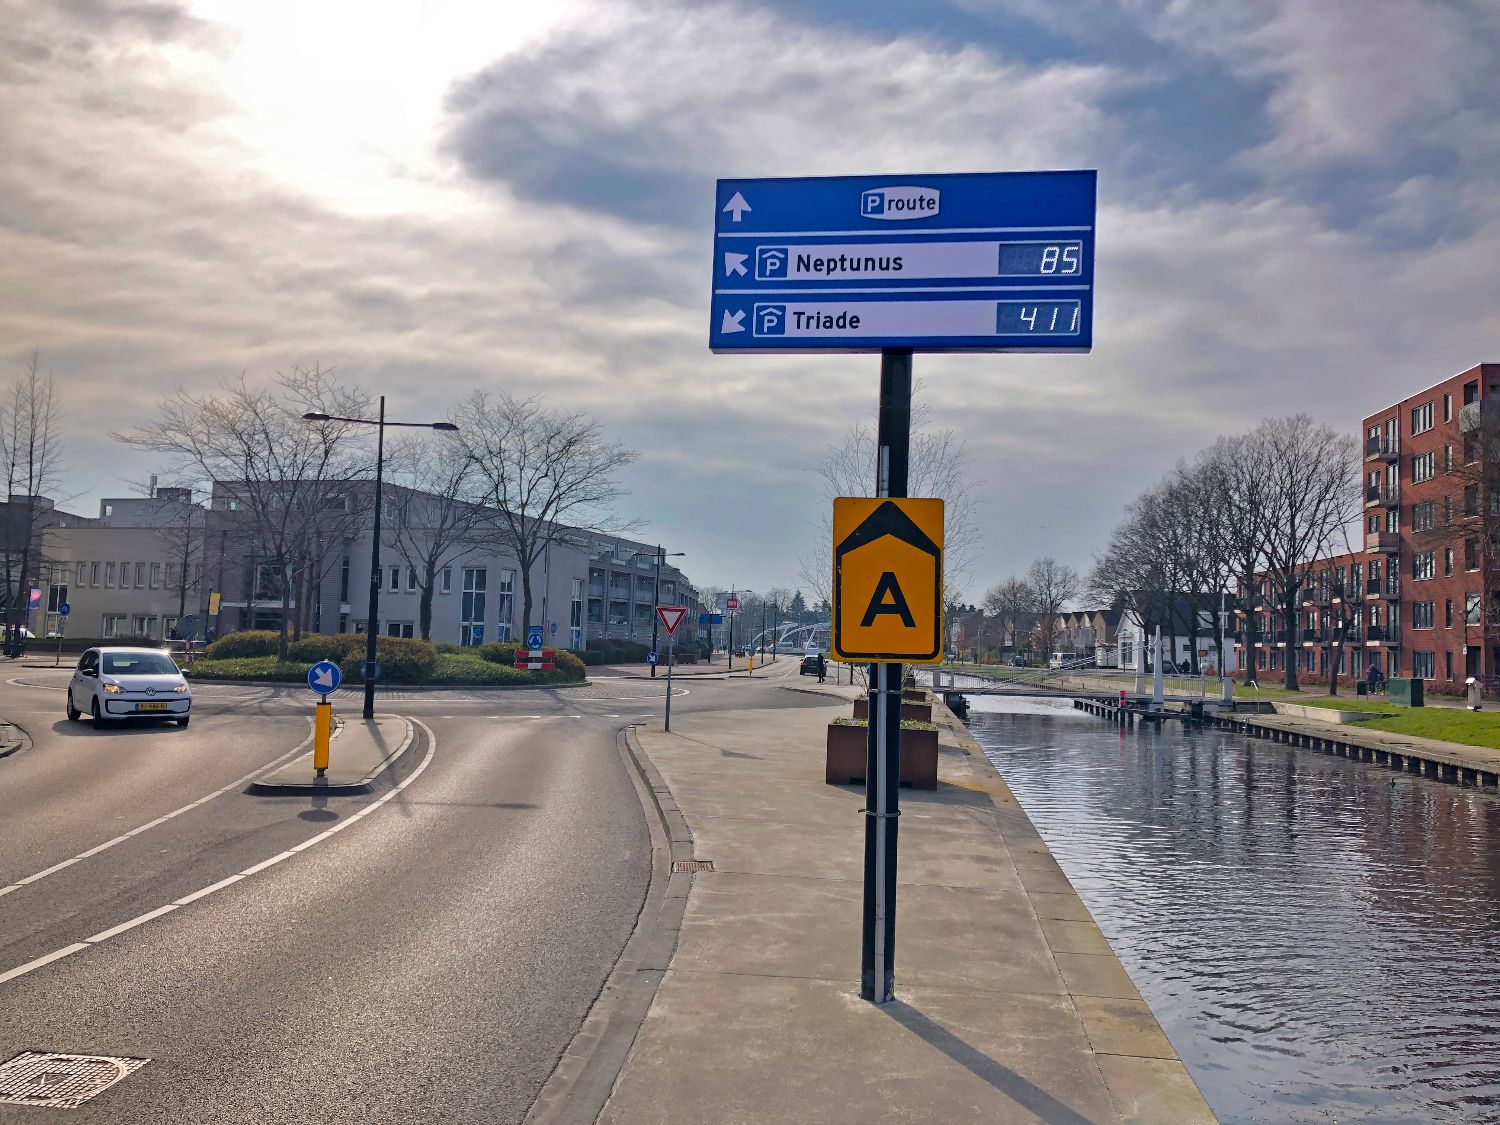 PRIS bord met LED display numeriek Vol Vrij Kruis voor weergeven aantal vrije parkeerplaatsen